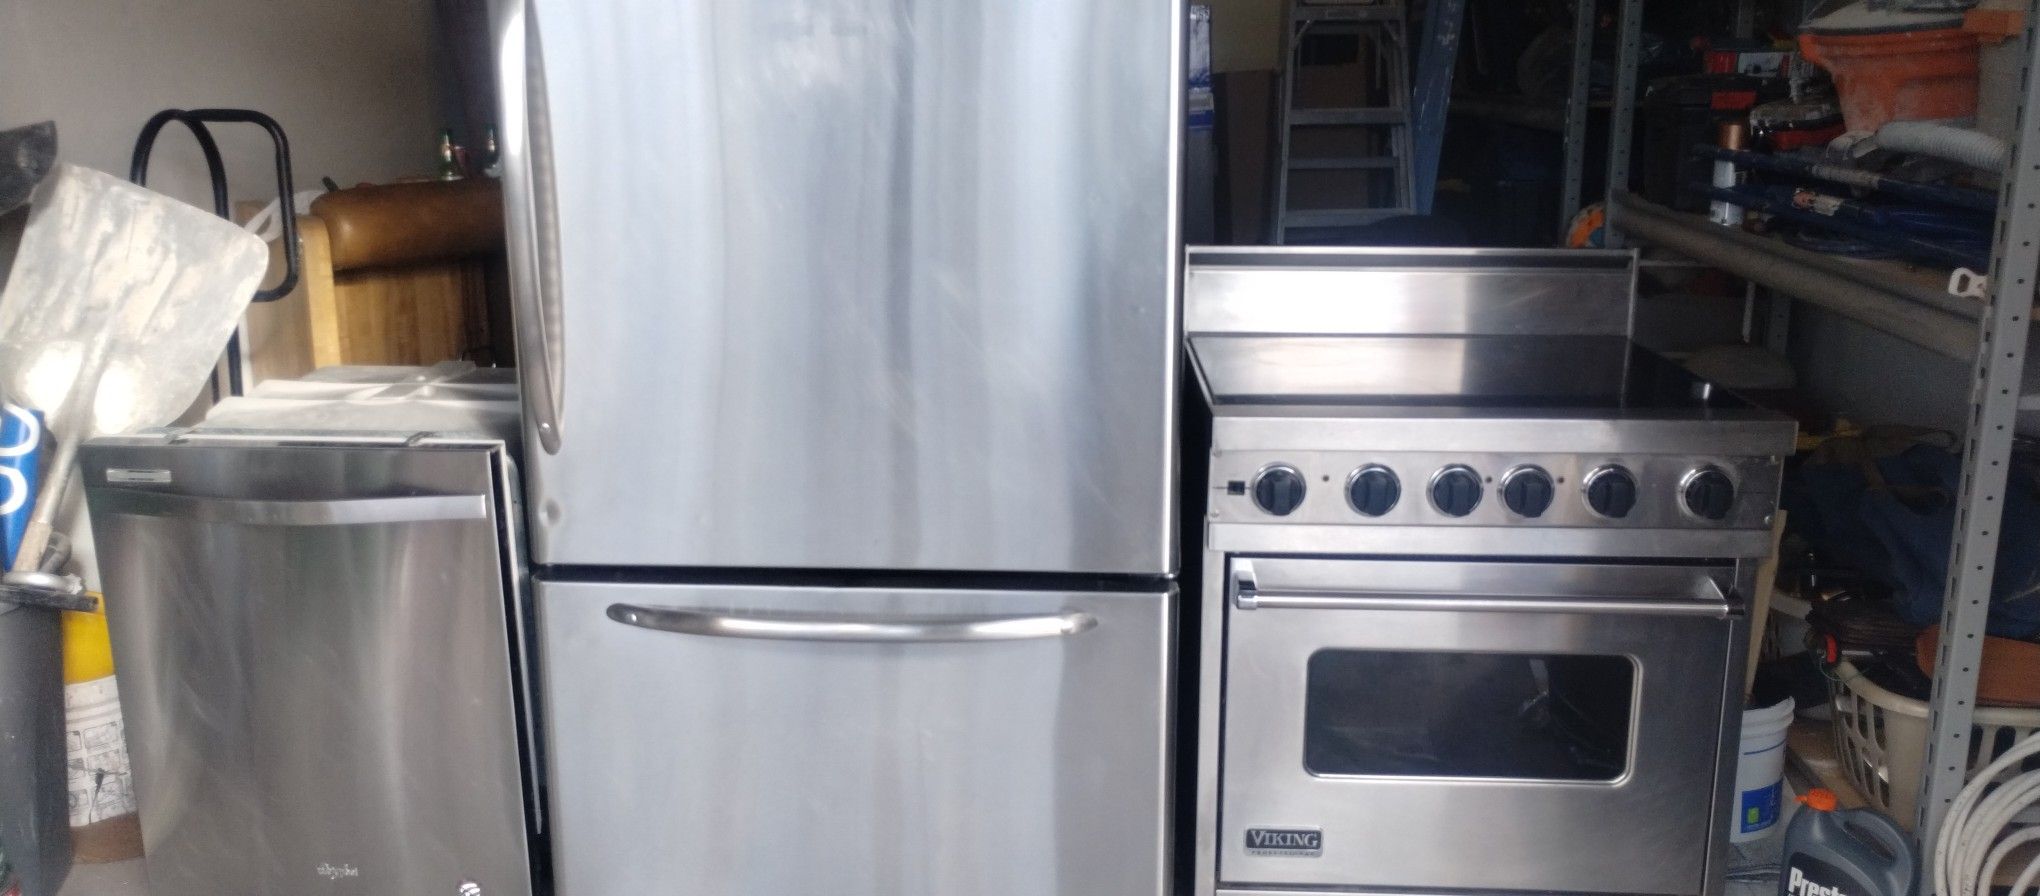 Stove Refrigerator And Dishwasher Set 